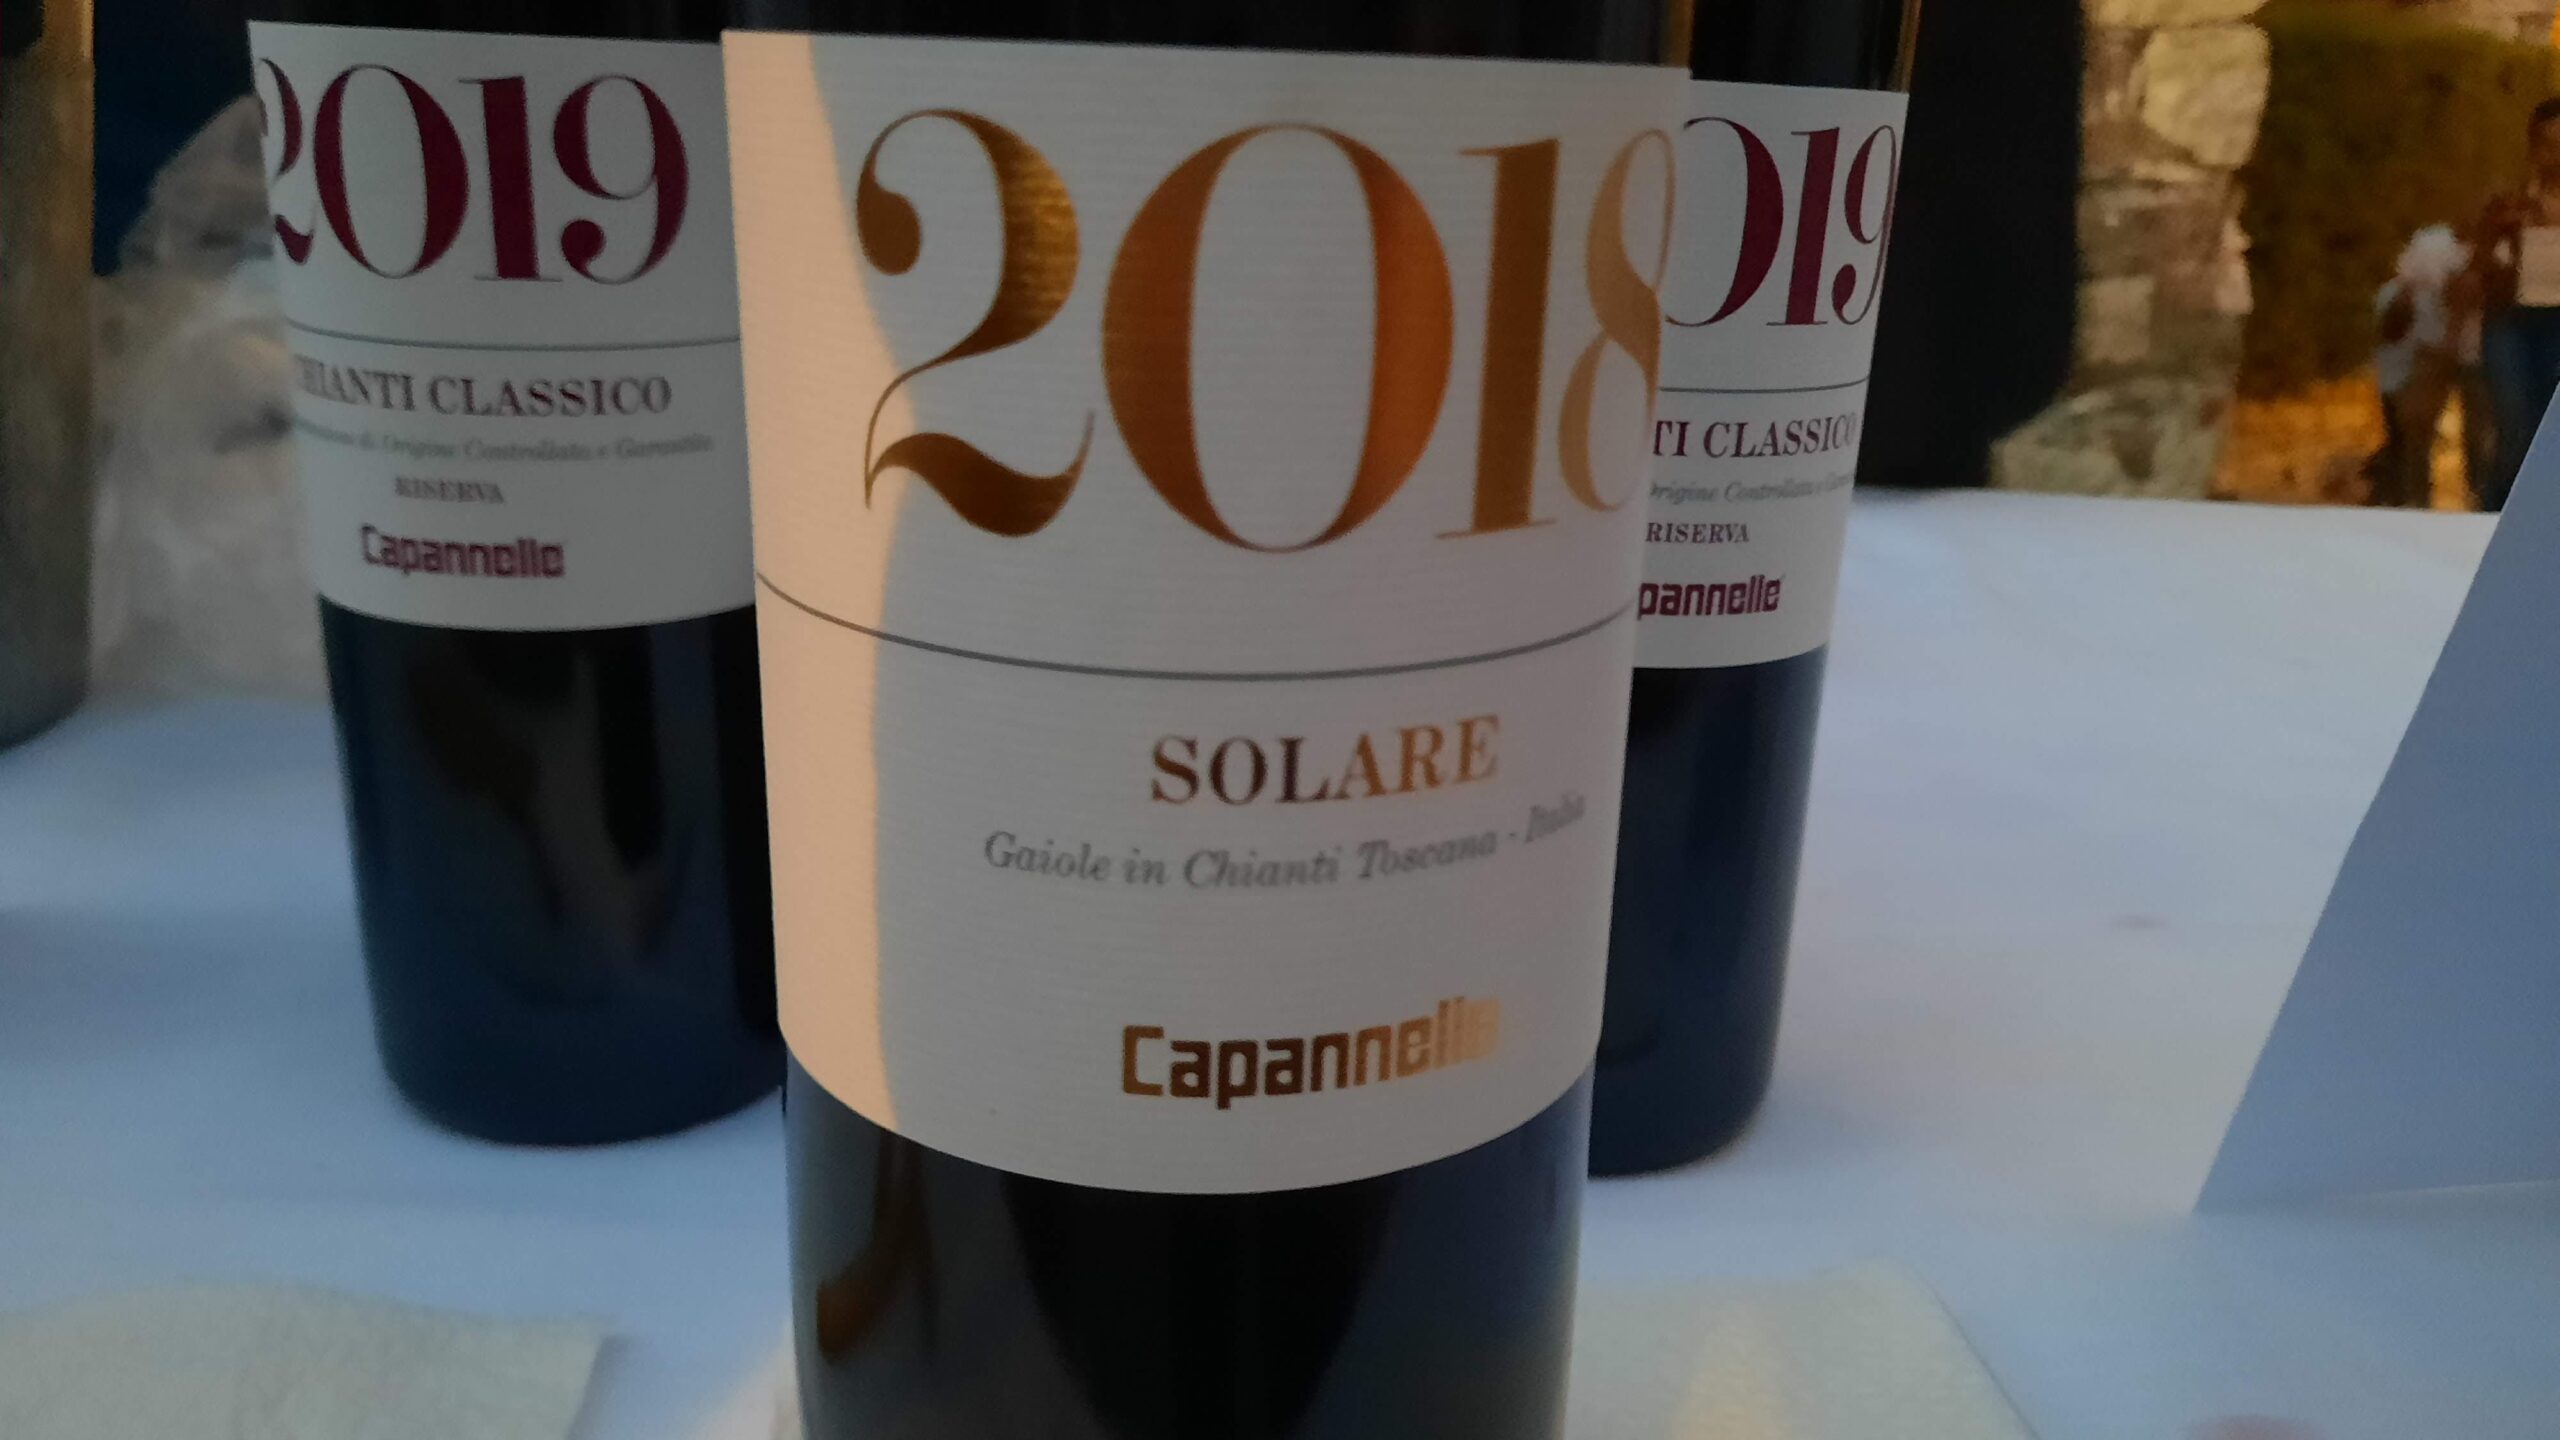 Solare Toscana Igt  2018 Az.Capannelle, articolo e foto di Adriano Guerri, Calici nel Borgo